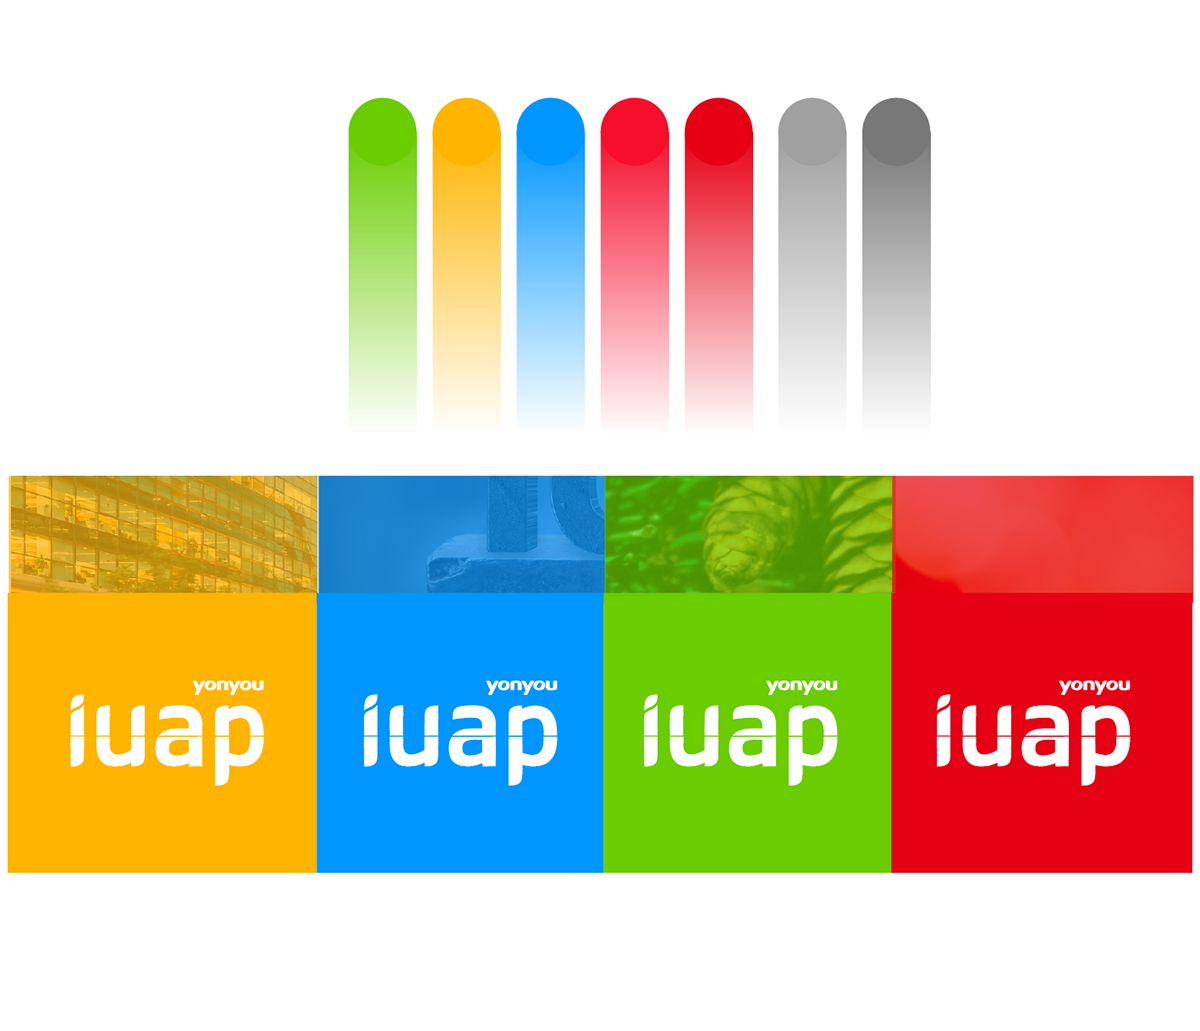 iuap brand logo 品牌 标志 用友